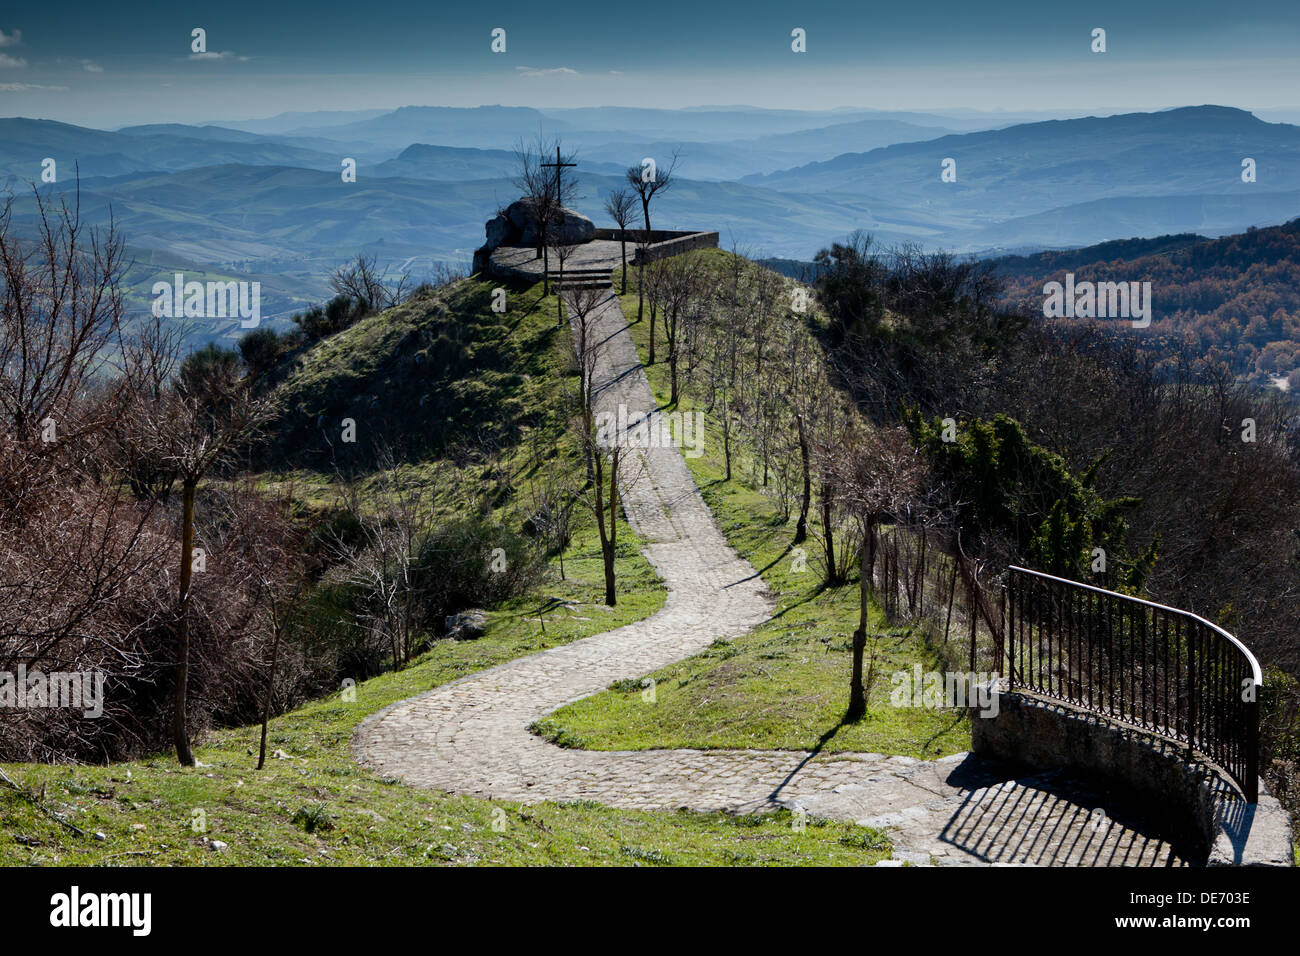 Ein Blick von der Berg Stadt von Petralia Sottana in den Modonie Bergen, Sizilien. Stockfoto